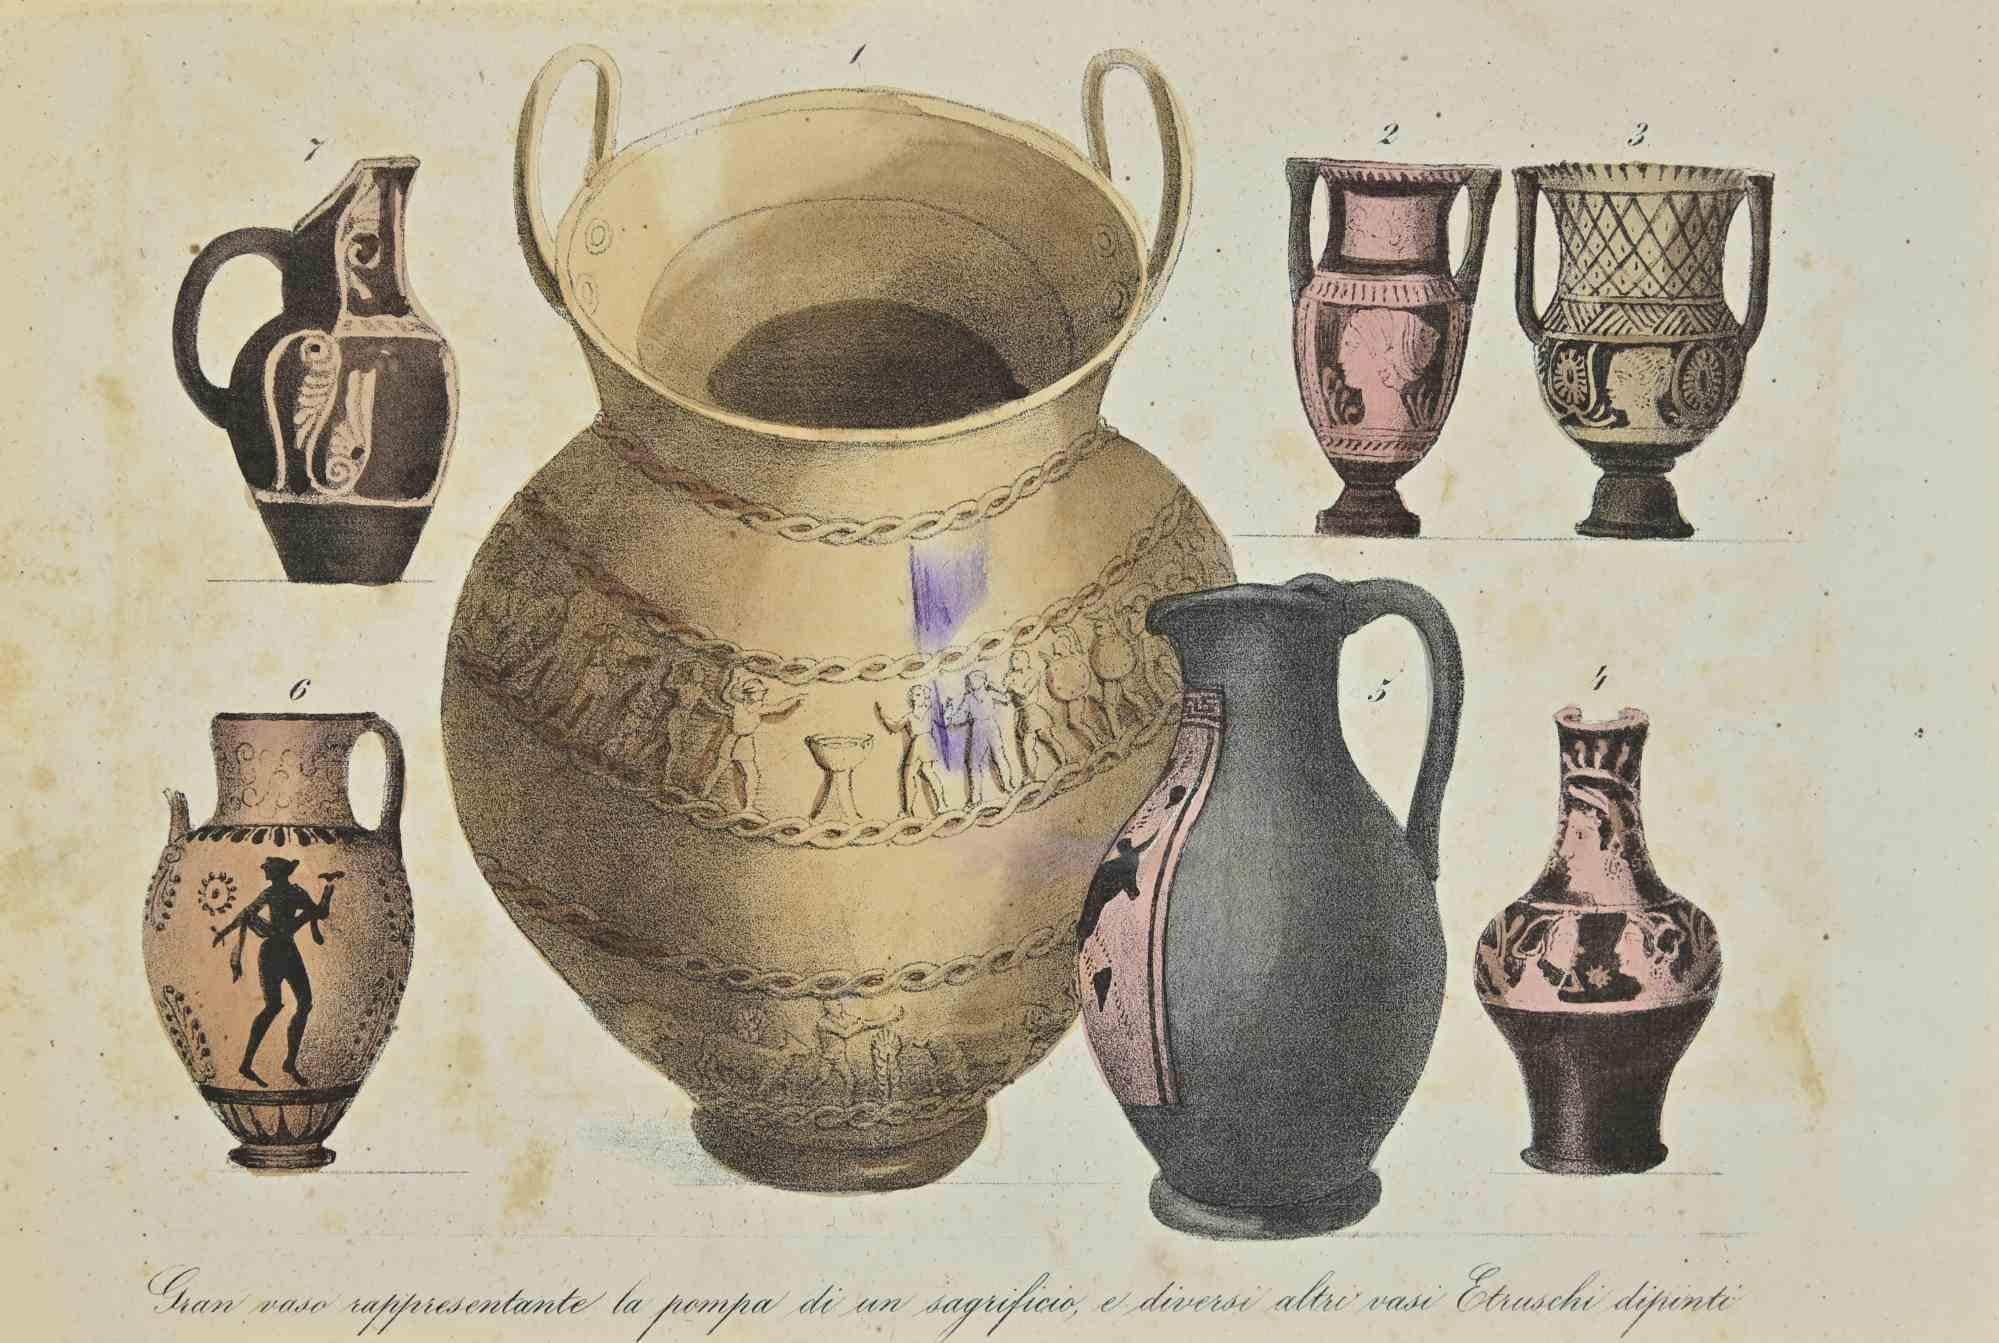 Utilisations et douanes - Peinture étrusque - Lithographie - 1862